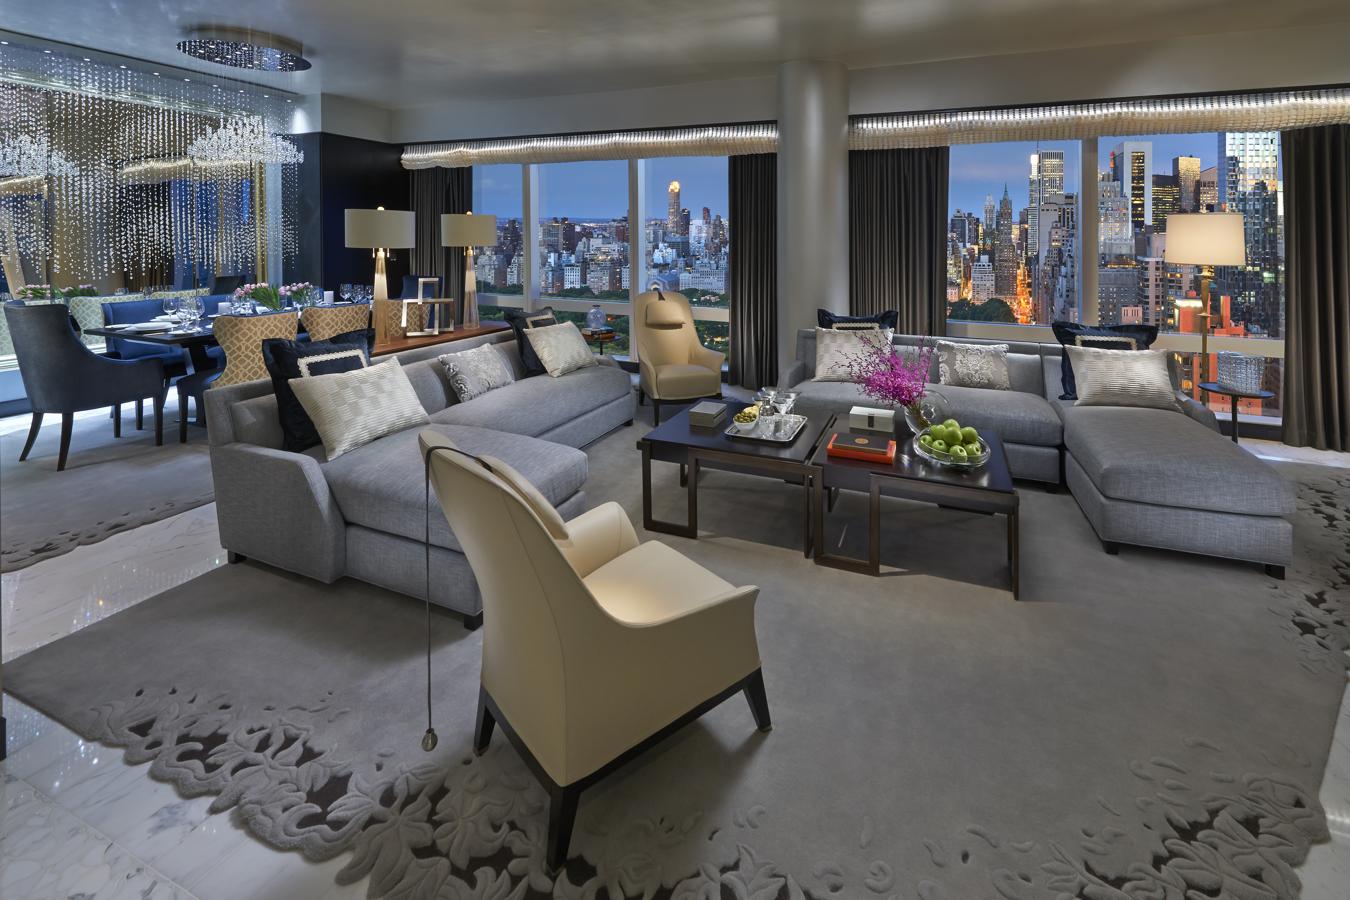 Situada en la planta 50 del hotel Mandarin Oriental New York, la Suite 5000 es una espaciosa estancia de 306 metros cuadrados con tres dormitorios, que combina el mejor diseño y arte de la ciudad.